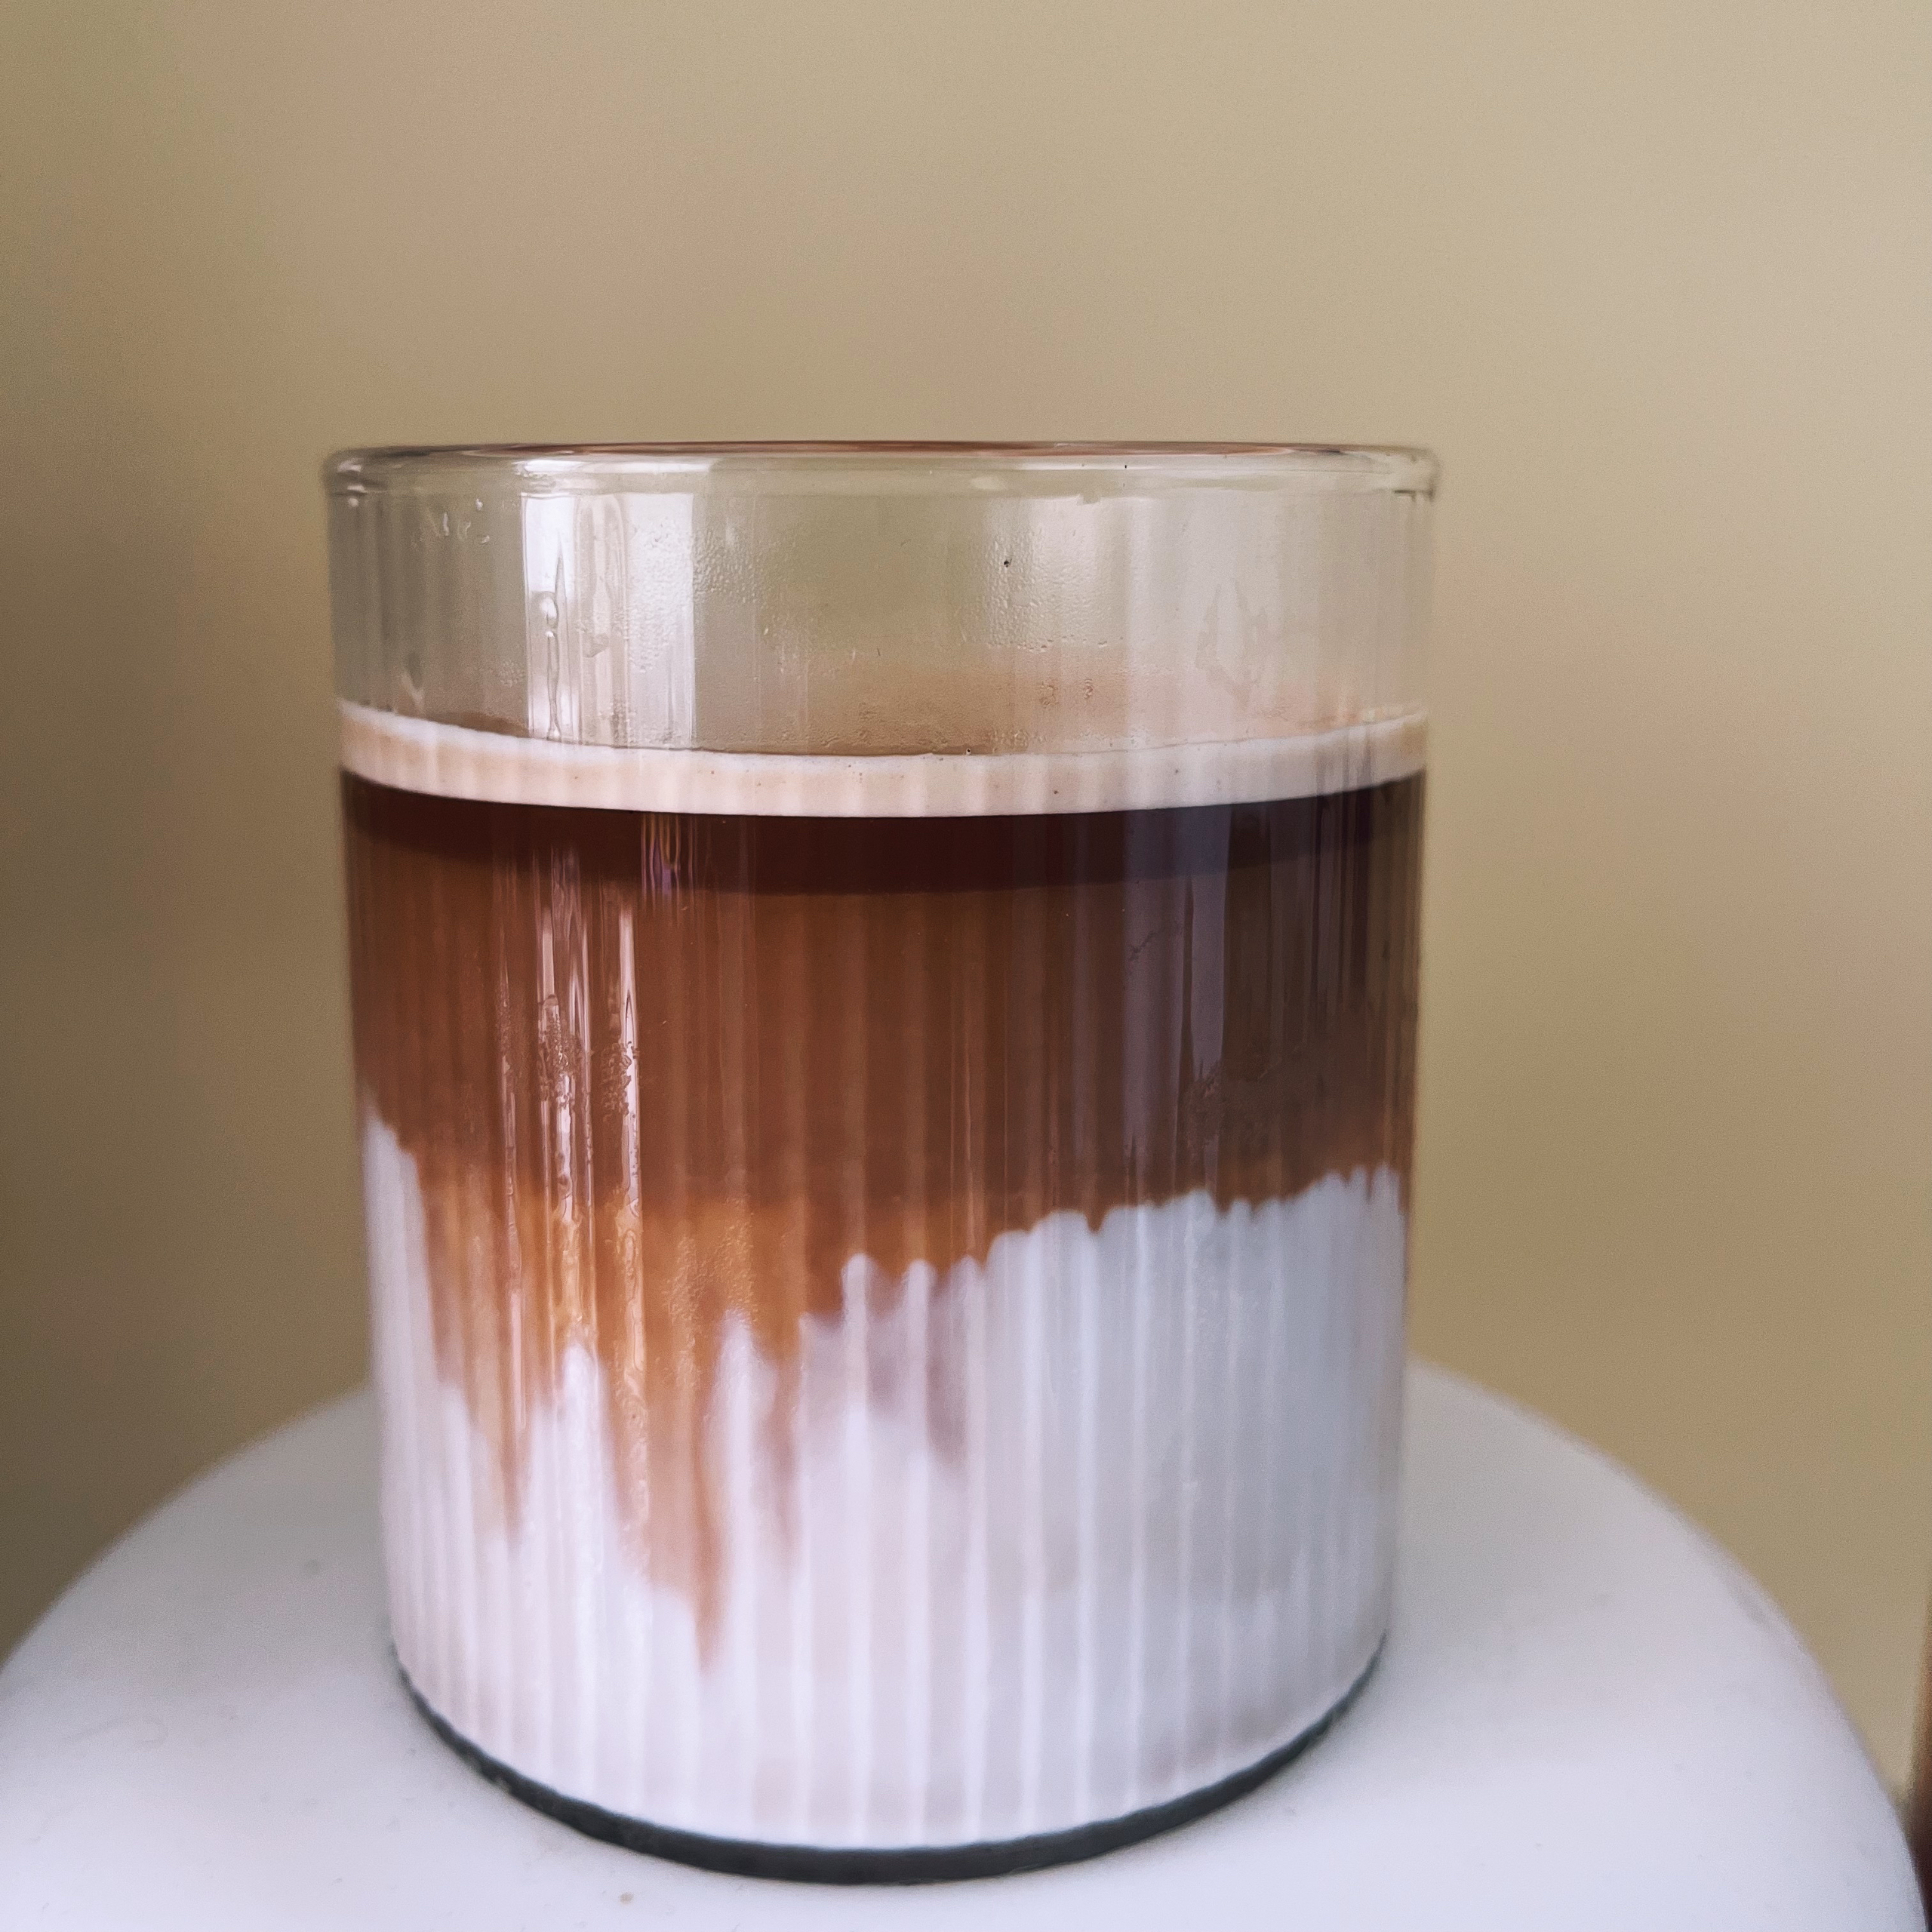 【冠军的咖啡配方】之超简单的“Dirty coffee脏脏咖啡”